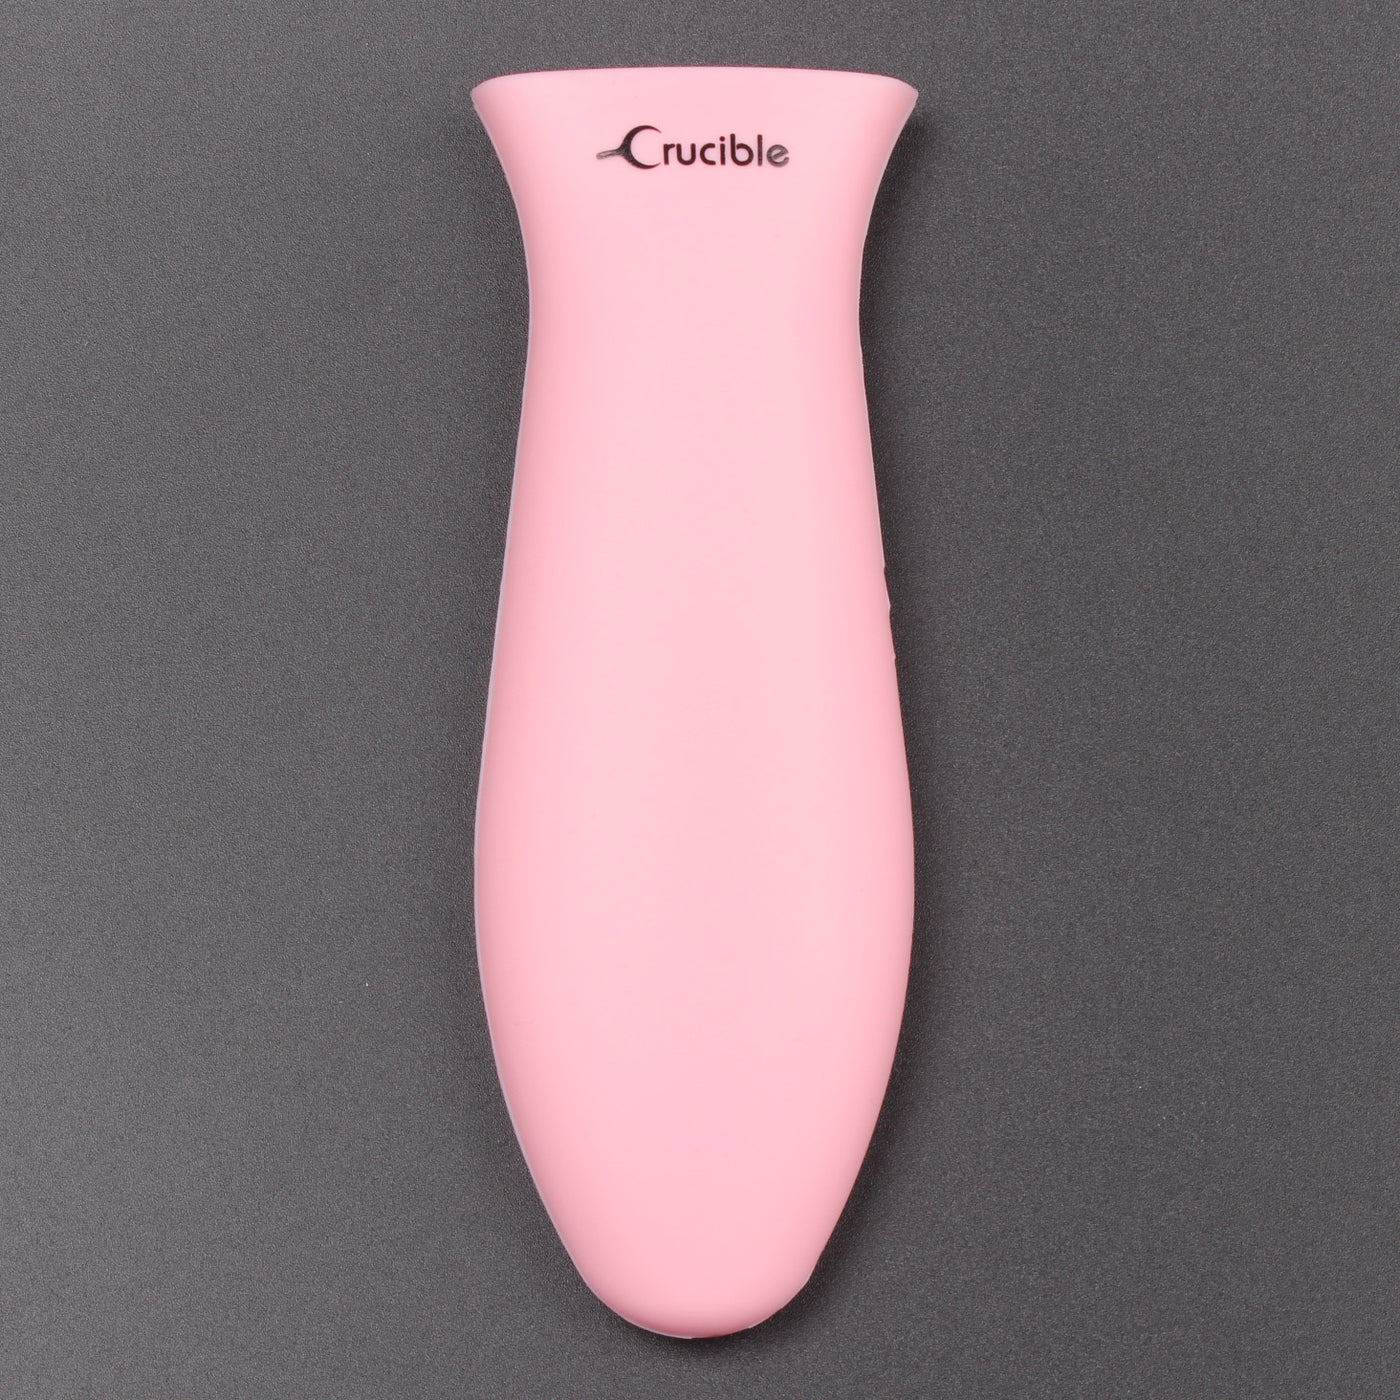 Силиконовый держатель для горячей ручки, прихватки (3 шт., розовые), рукоятка, чехол на ручку